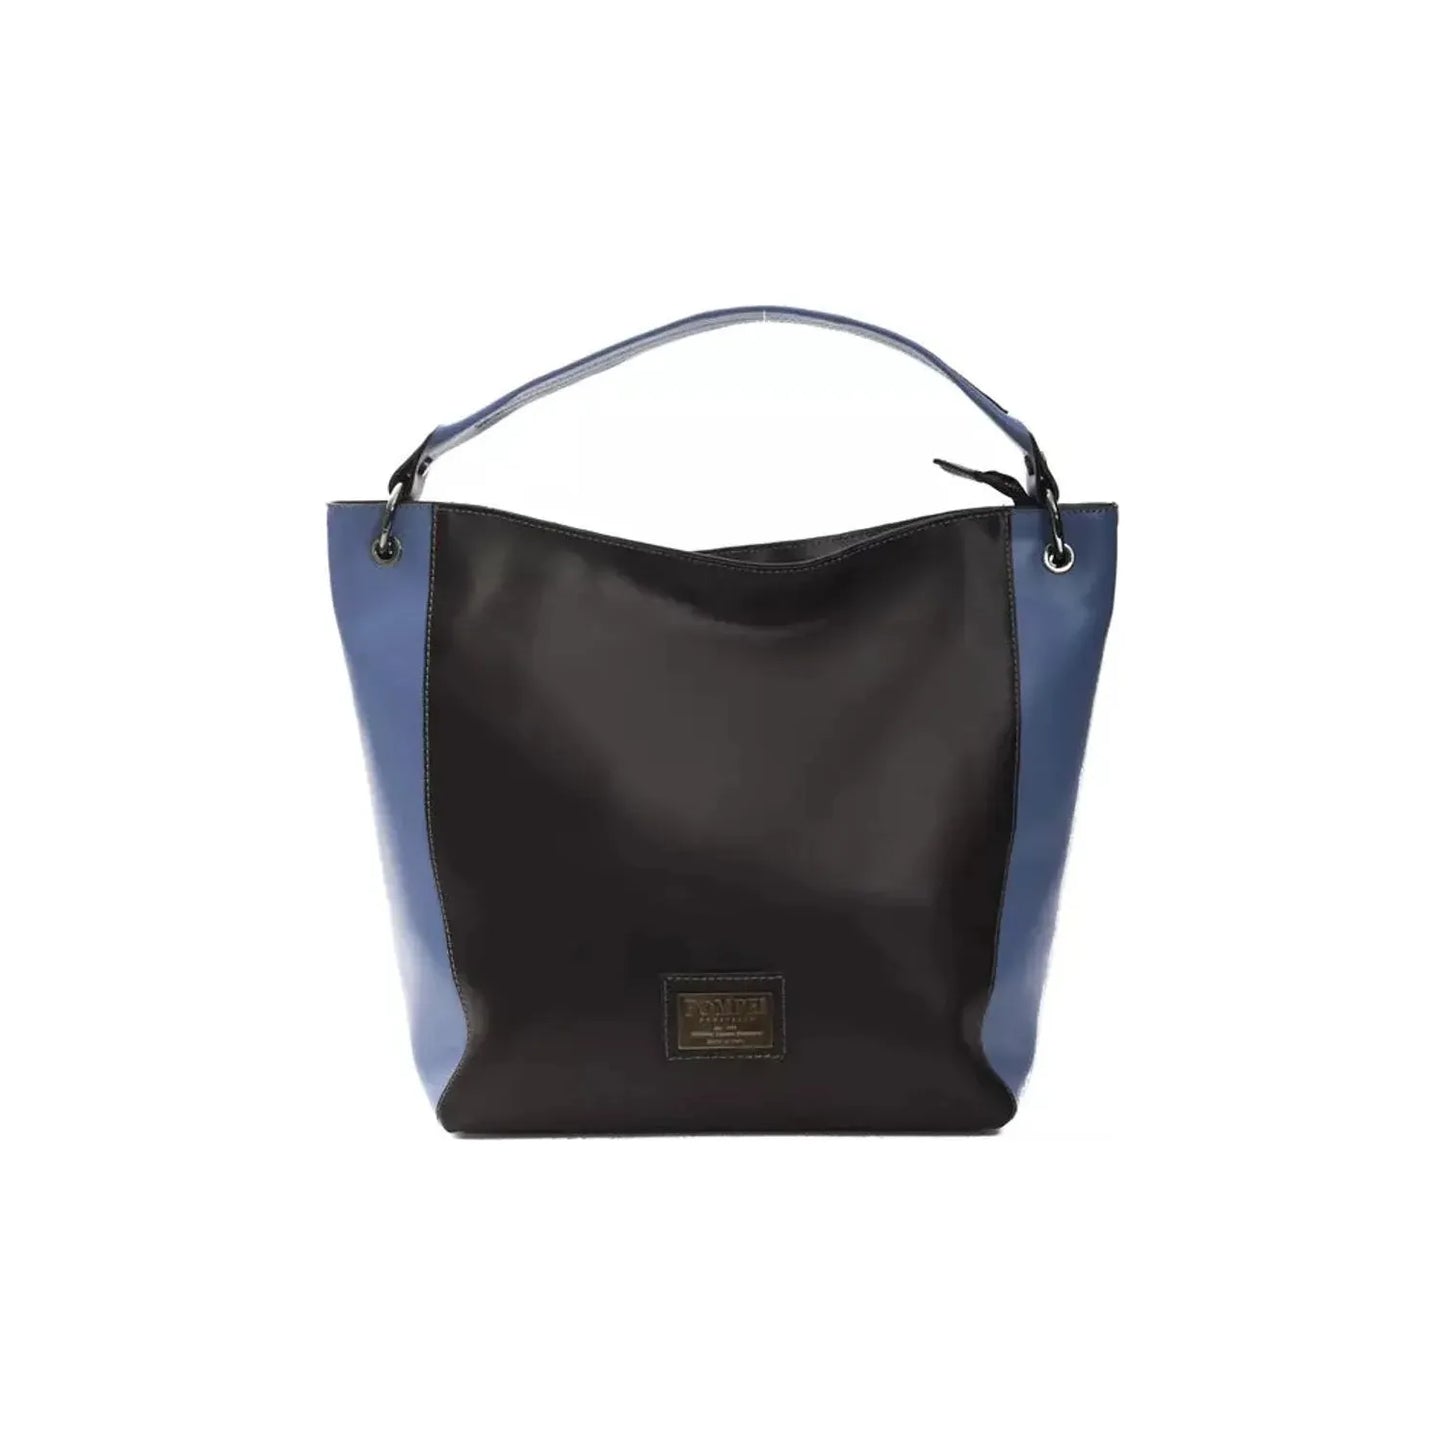 Pompei Donatella Chic Black Leather Shoulder Bag black-leather-shoulder-bag-1 stock_product_image_5831_569455170-32-3b4d7293-e5c.webp